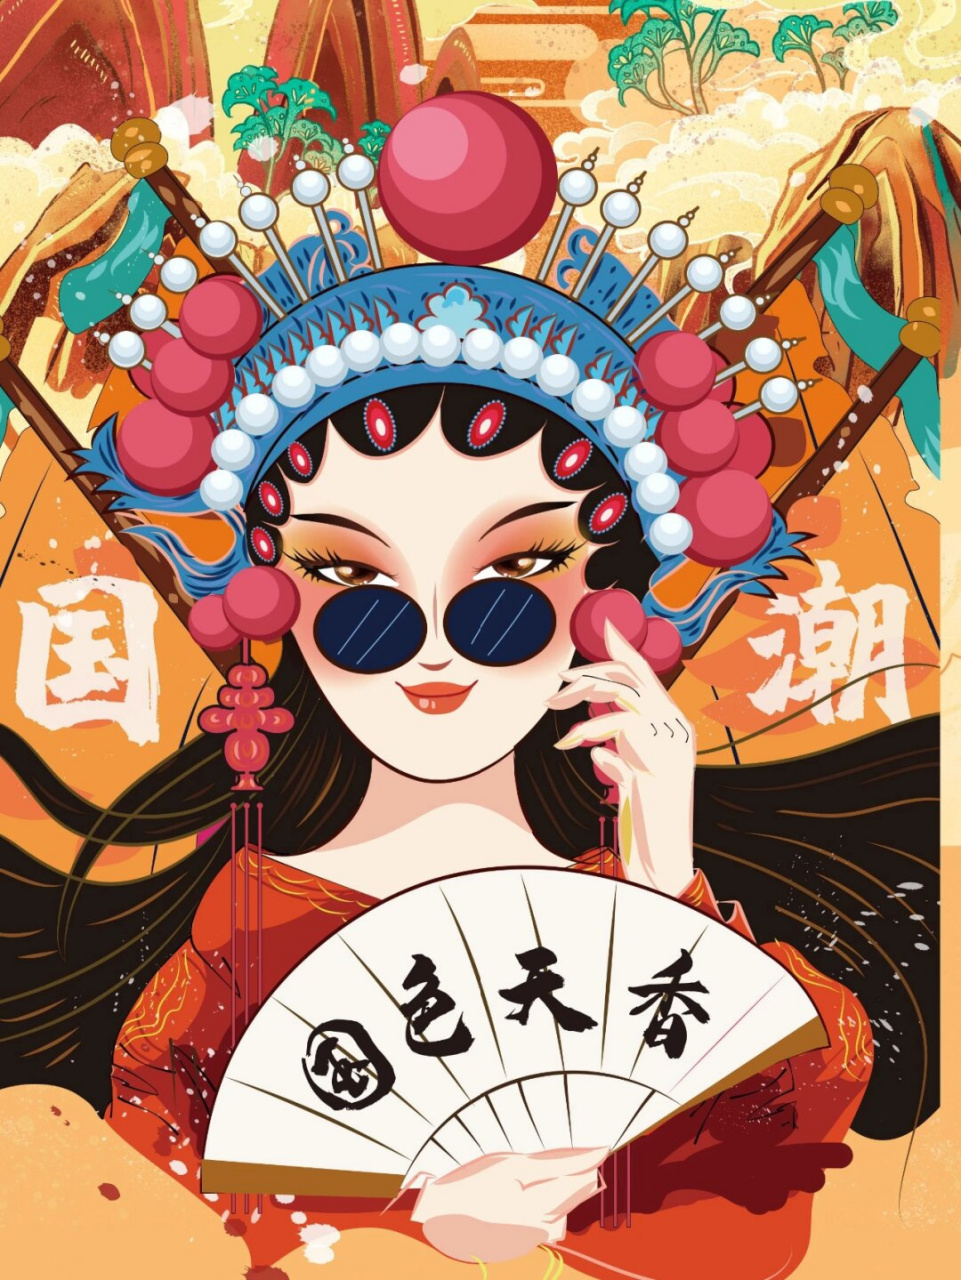 国潮风京剧人物插画素材分享  京剧作为中国的国粹和重要非物质文化